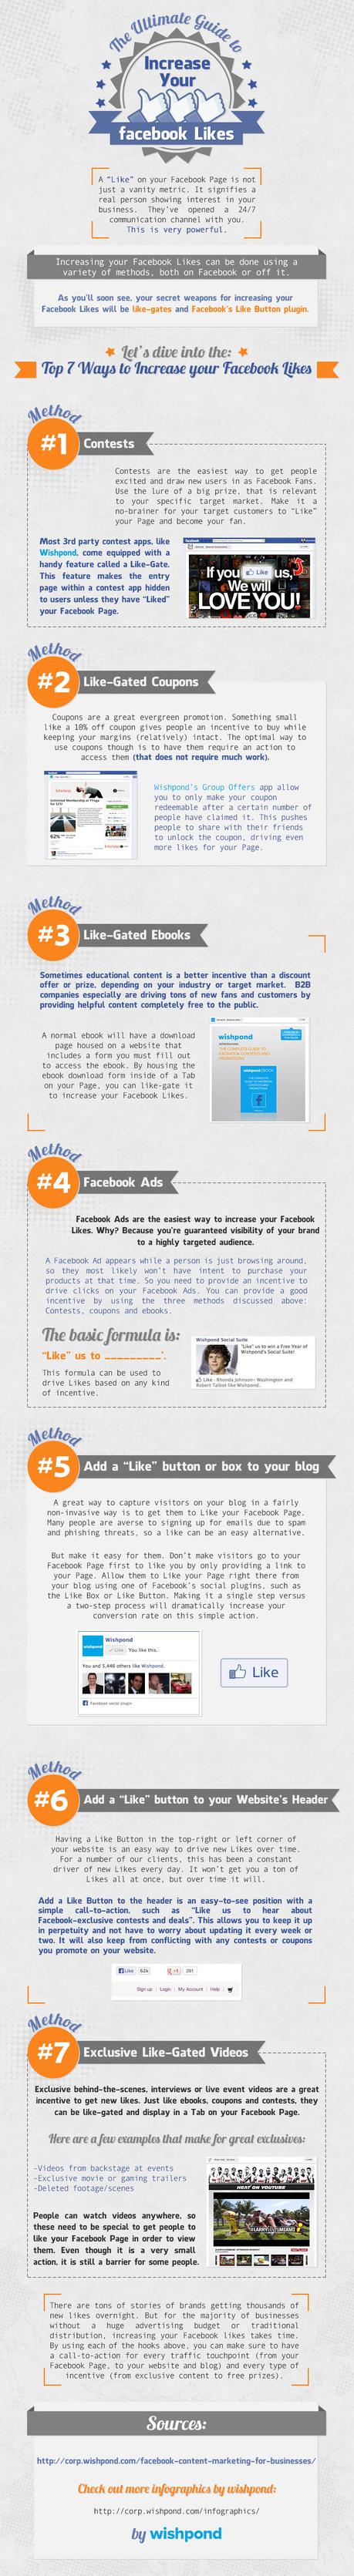 7 maneras de aumentar tus Likes en Facebook [Guía]